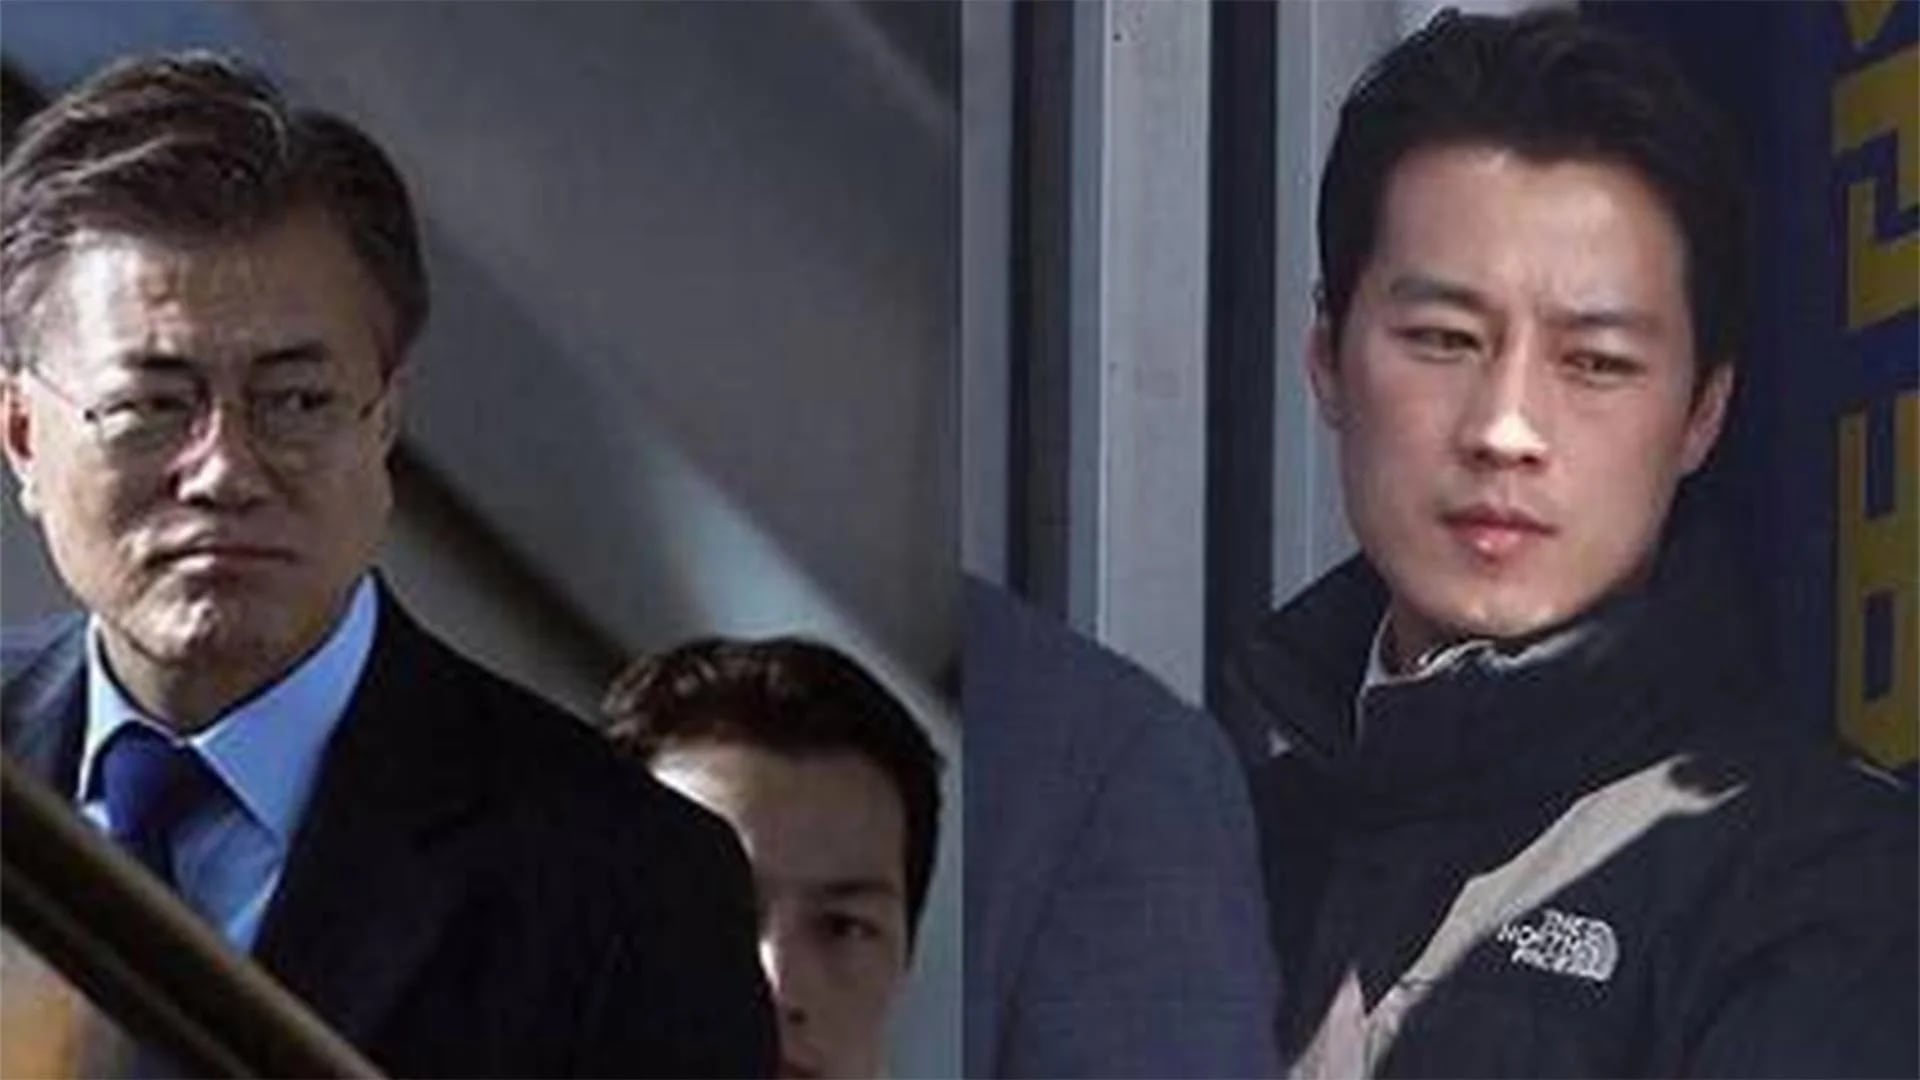 En la foto de la izquierda puede verse al presidente Moon Jae-in y al custodio detrás de él